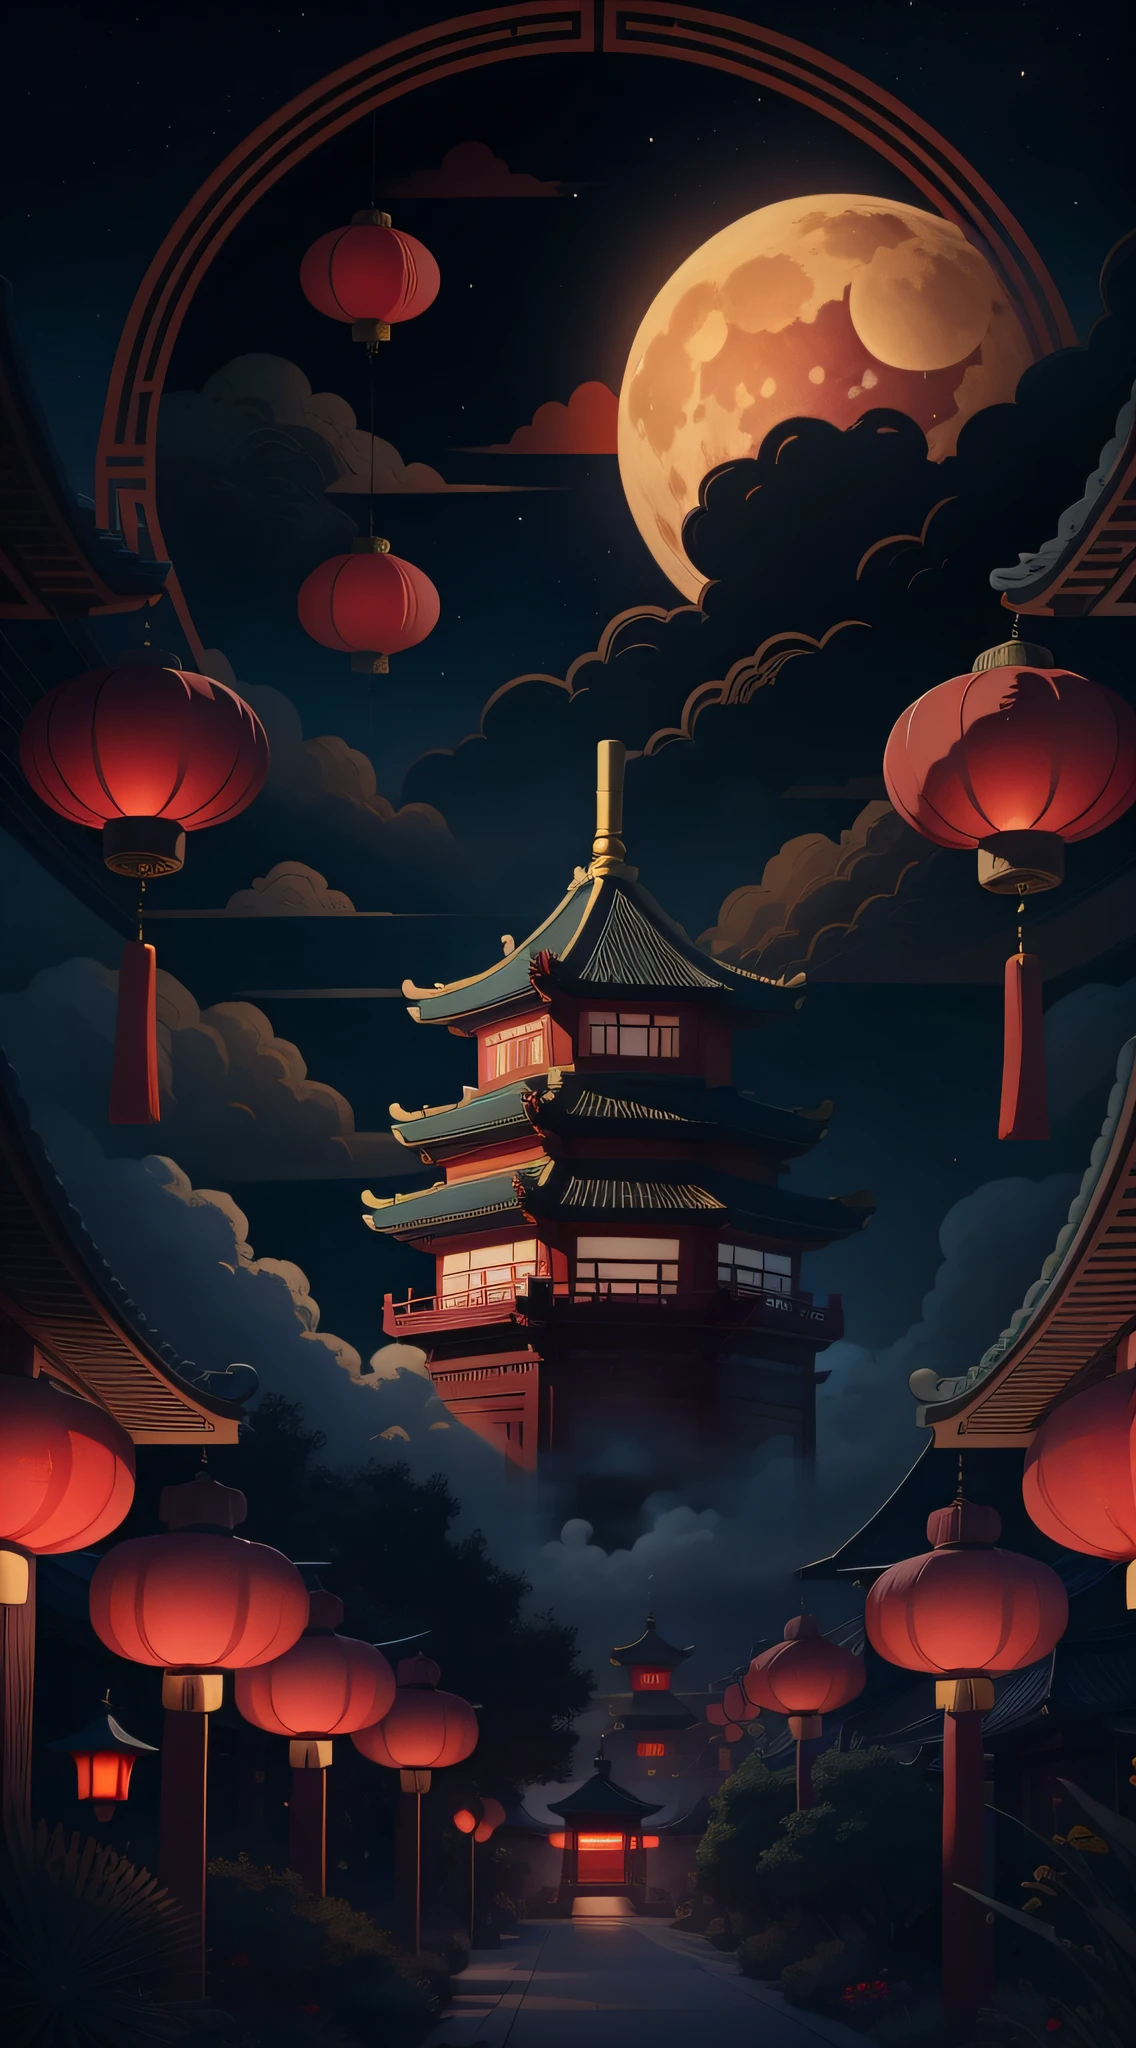 中秋節，月餅， 祥雲, 紅燈籠, 精美的中國古代建築, 背景是一個巨大的月亮, 附向量線圖, 黃色的、紅色和深藍色調, 抽象圖片, 無人，無人，無人，超現實主義, 清晰的背景趨勢, 輪廓光清晰, 邊緣光, 幻想, 斑駁的光, 平面插圖,迪士尼風格, 8K, --與 9:16 --q 2 --二二 5